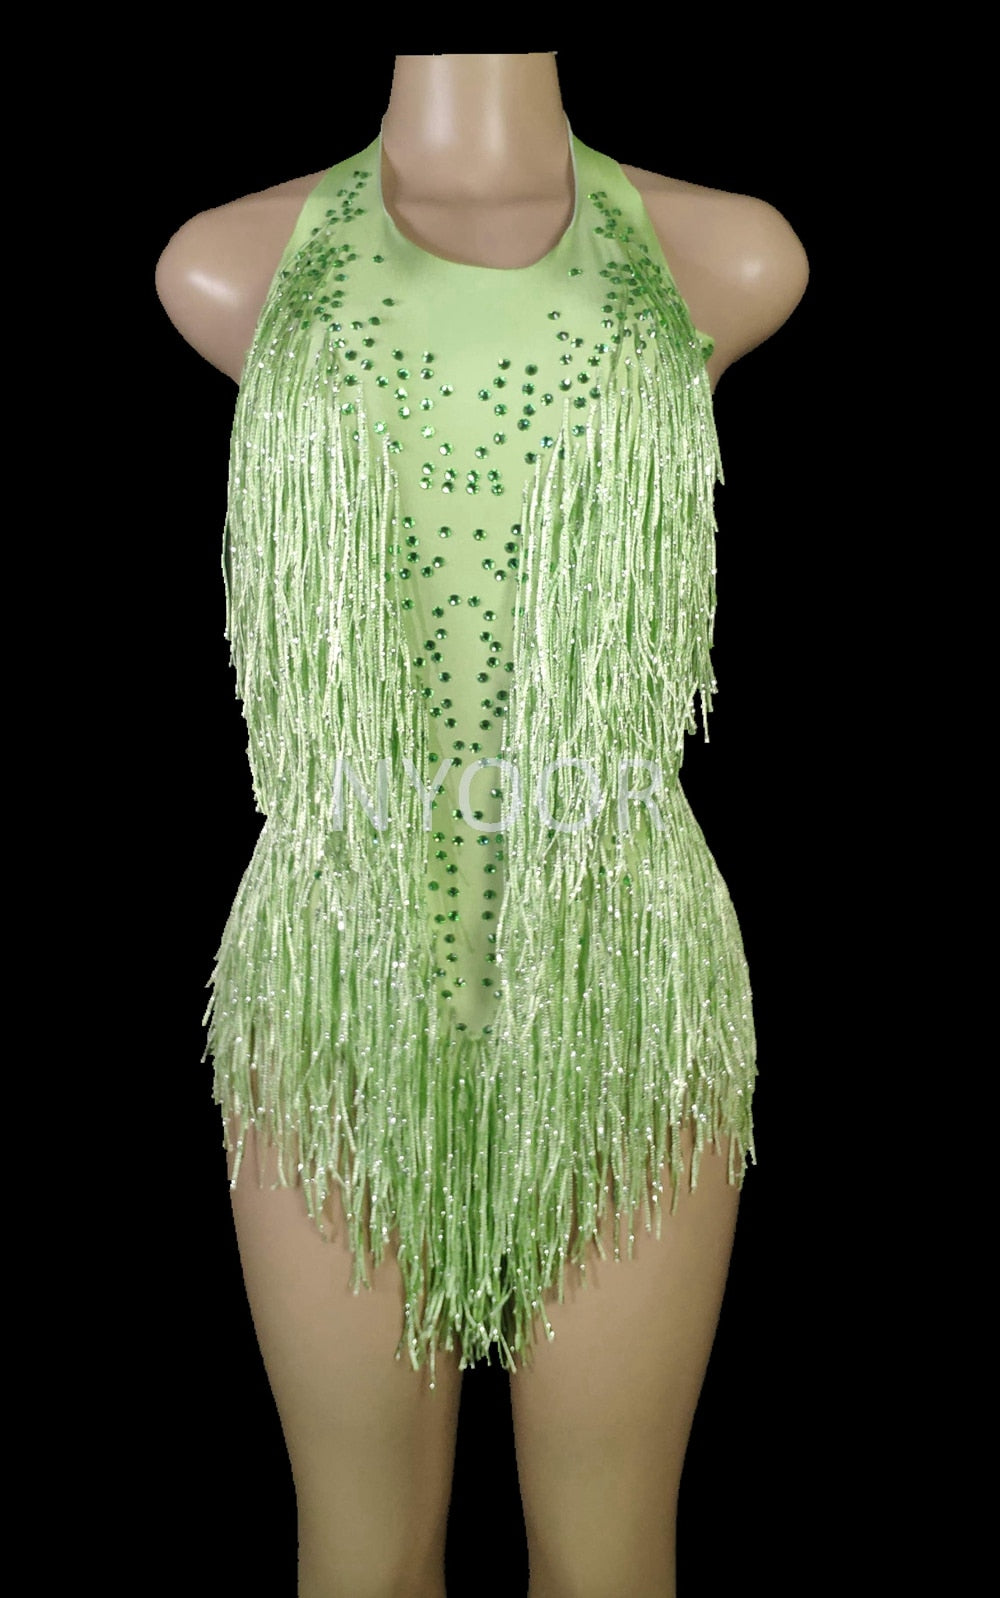 Sparkly Rhinestones Fringes Bodysuit Women Nightclub Outfit Glisten D 8425